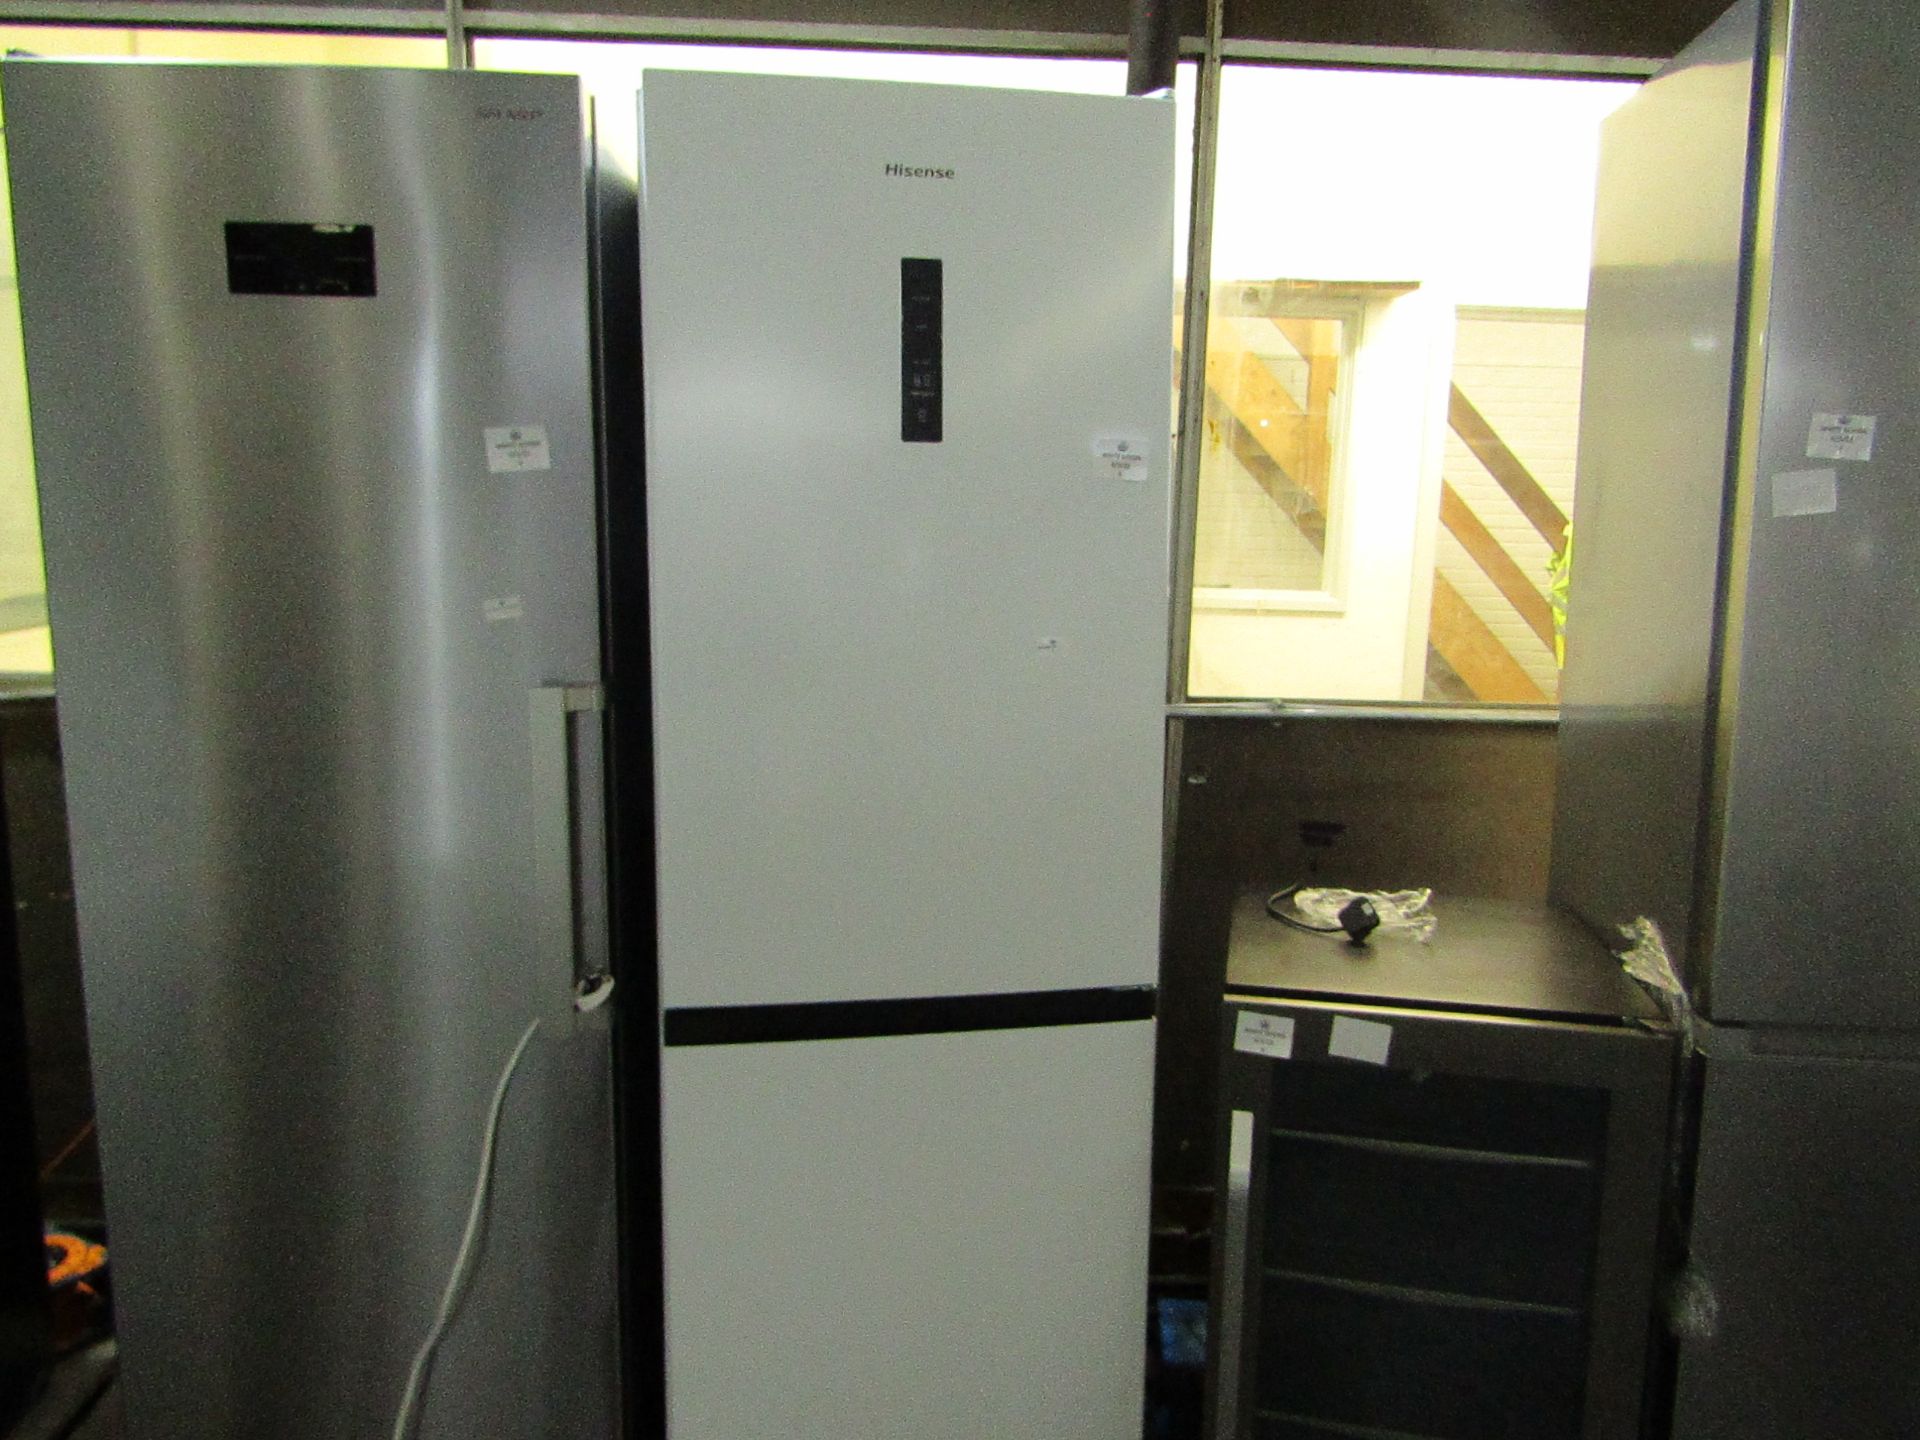 Hisense fridge freezer, tested working.